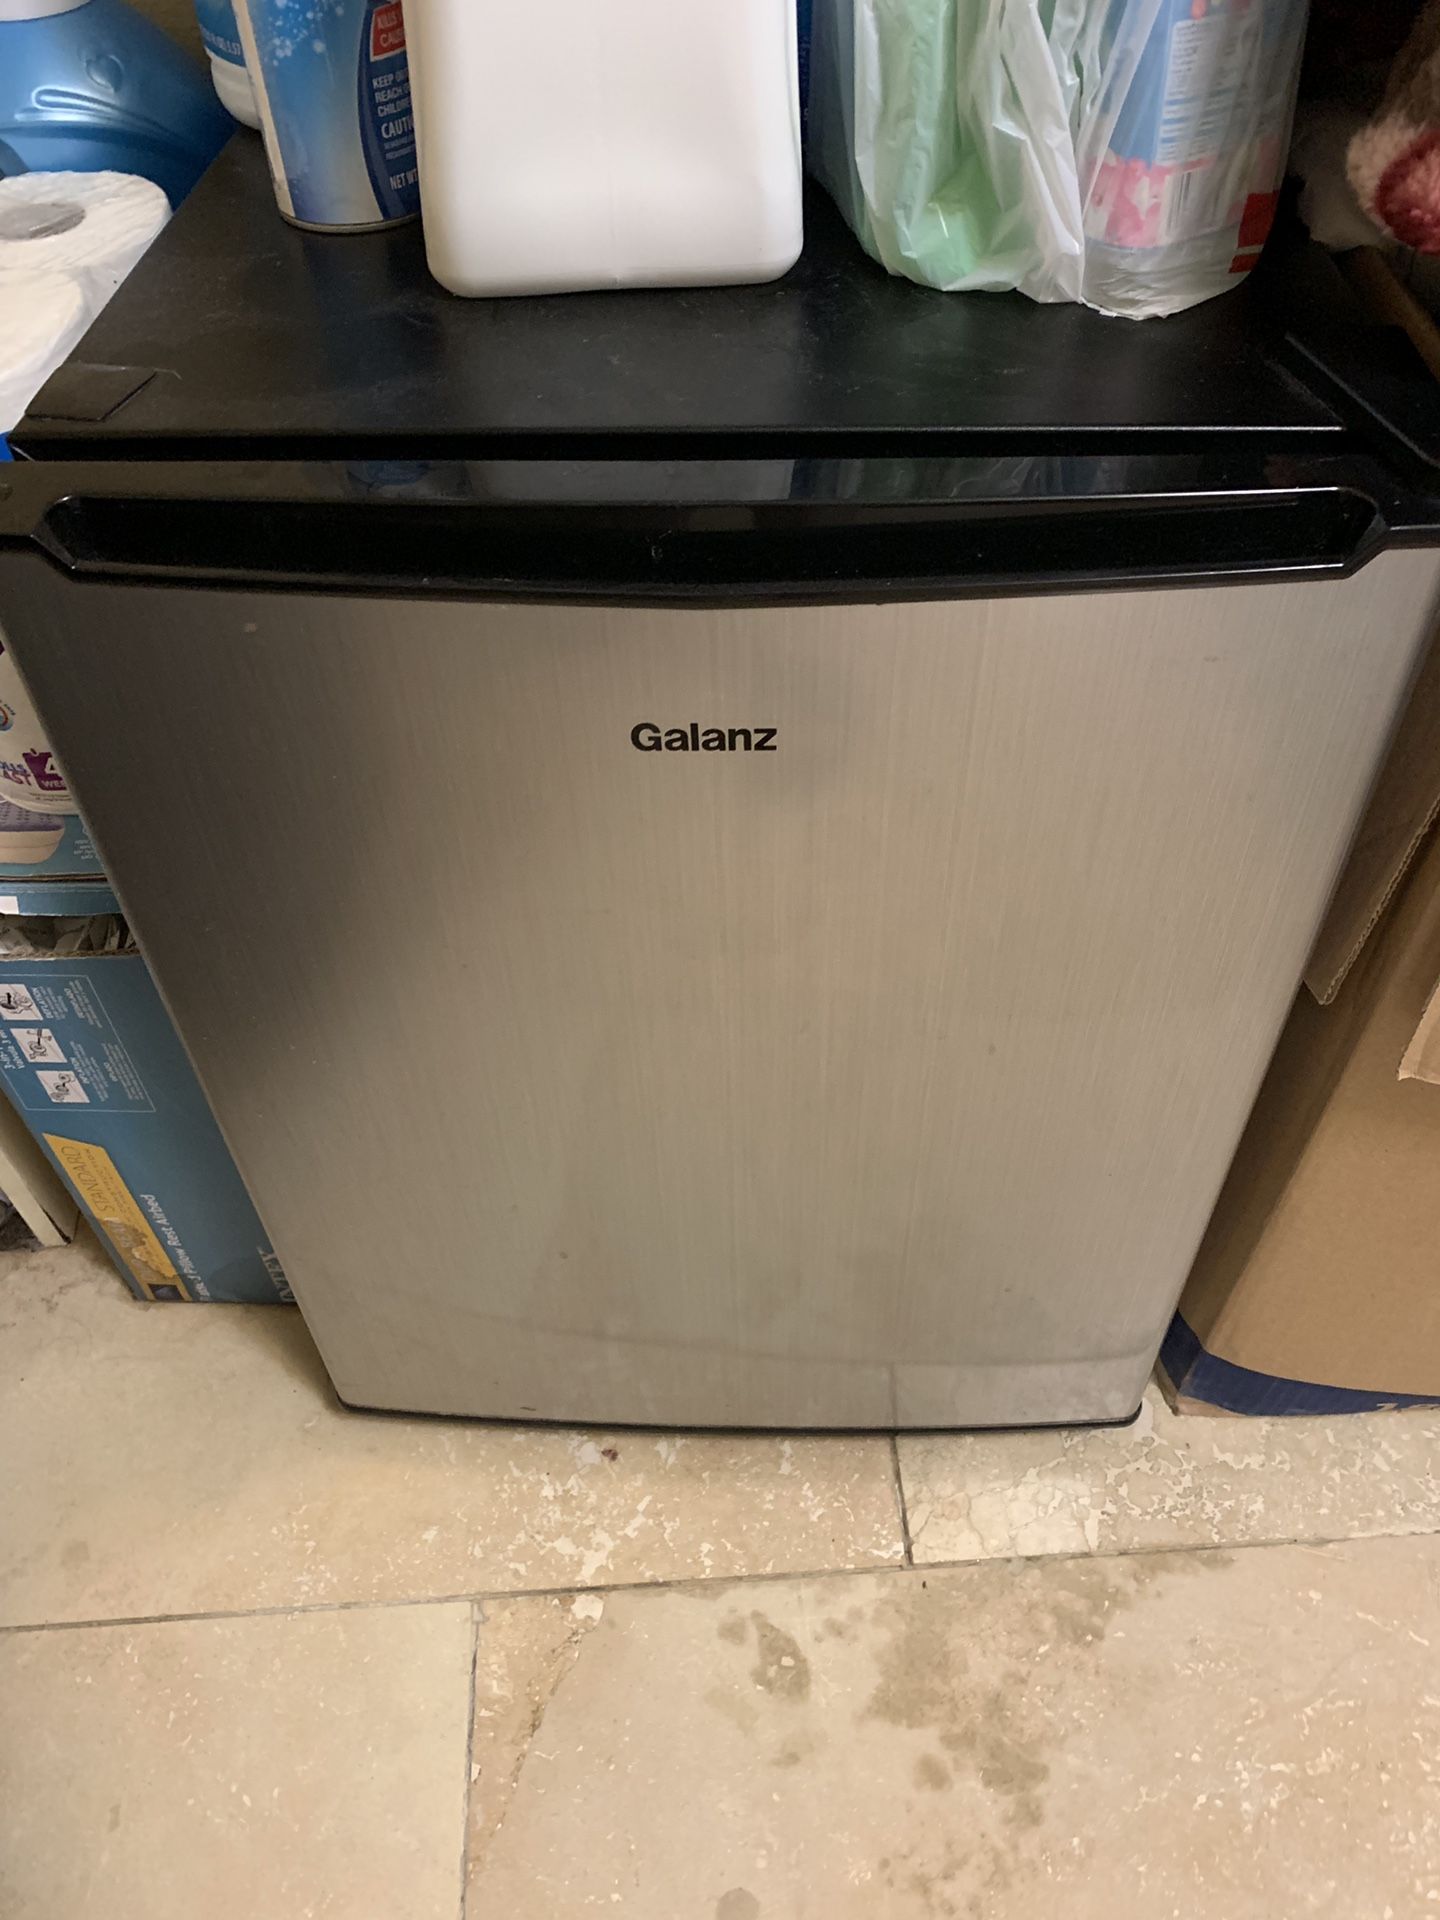 Galanz freezer